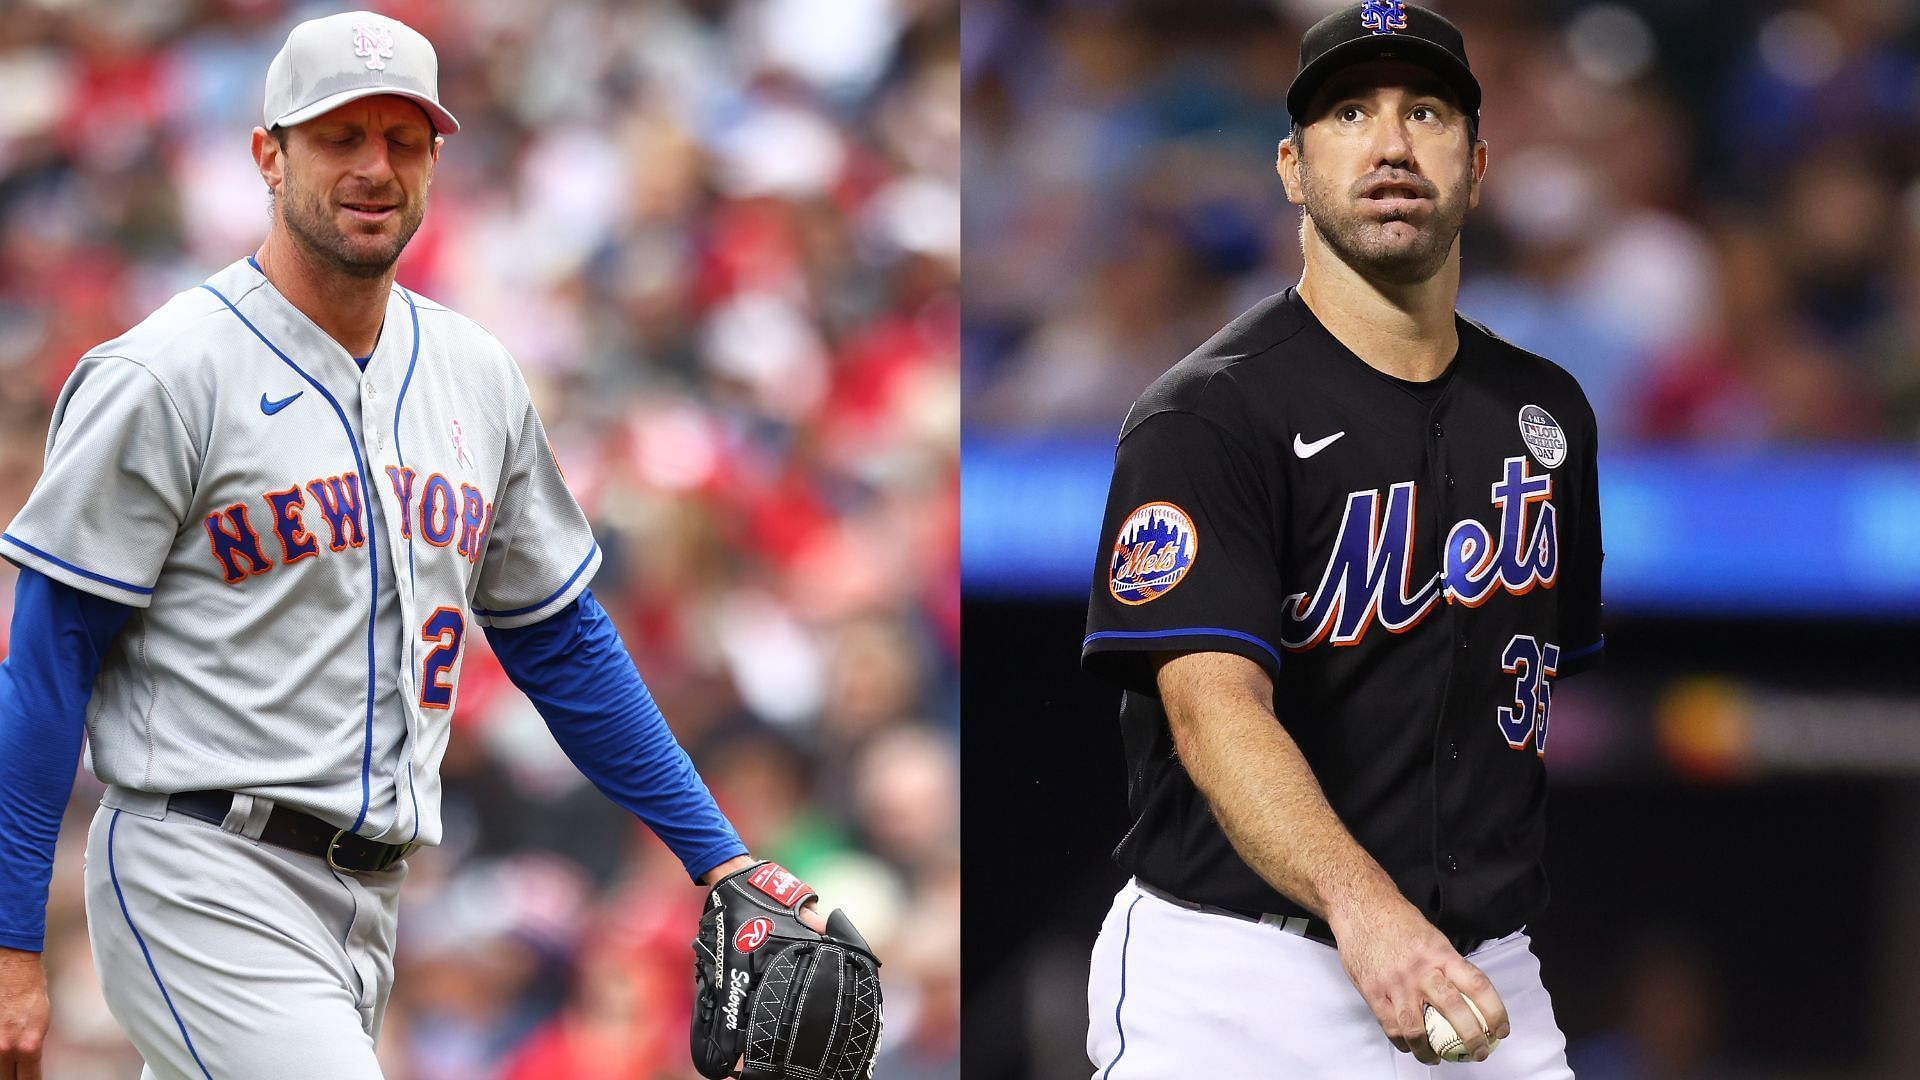 Max Scherzer and Justin Verlander of the New York Mets